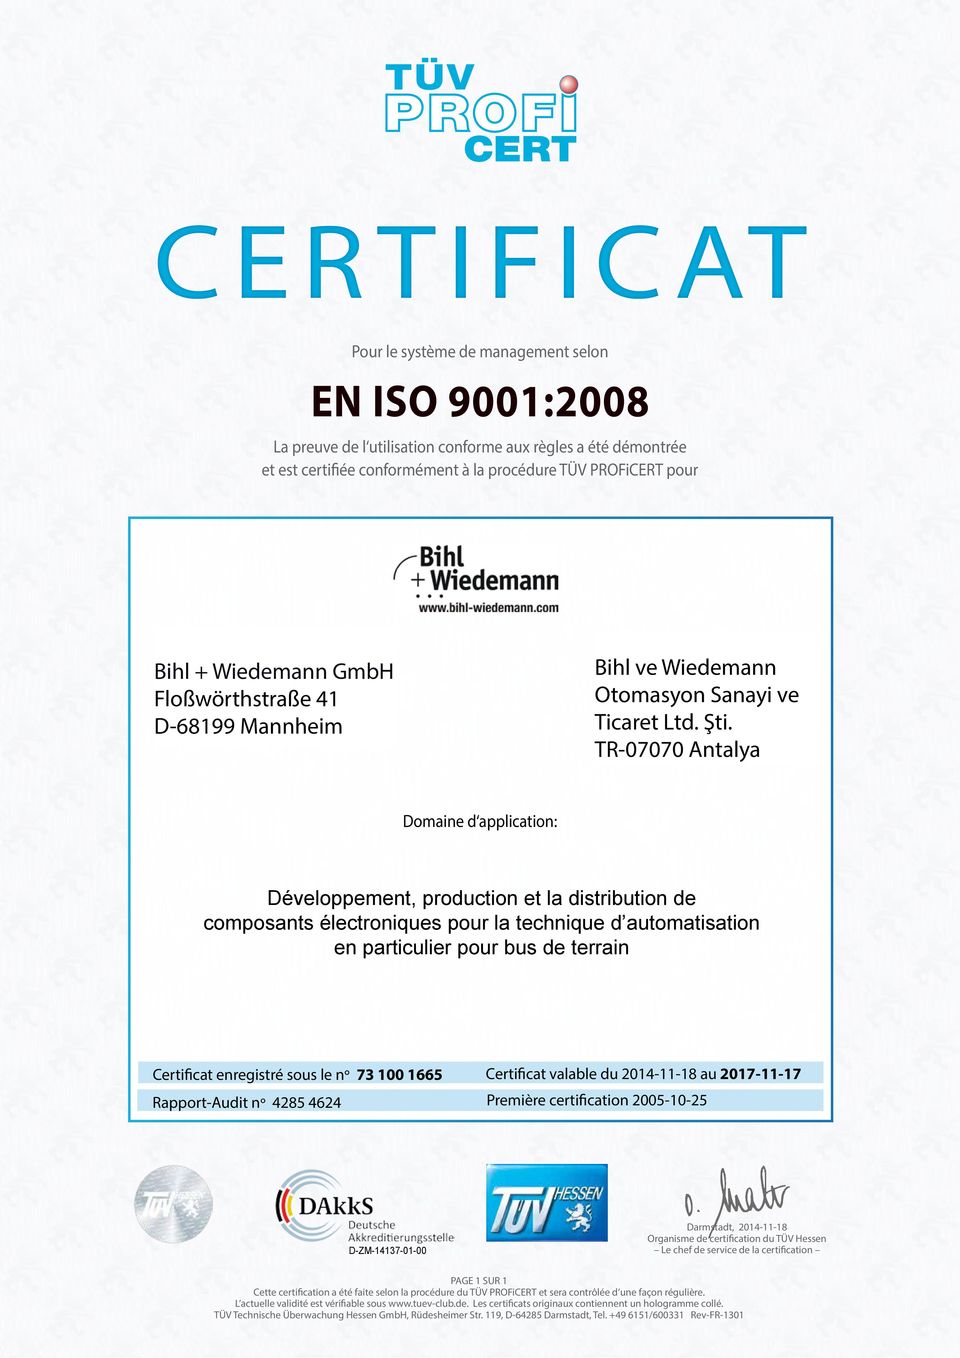 1665 Certificat valable du 2014-11-18 au 2017-11-17 Rapport-Audit n 4285 4624 Première certification 2005-10-25 Organisme de certification du TÜV Hessen Le chef de service de la certification PAGE 1